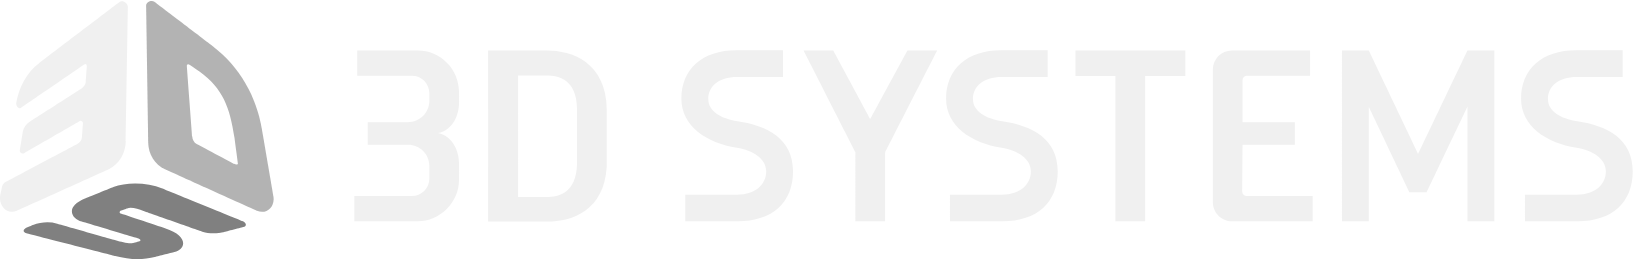 3D Systems logo grand pour les fonds sombres (PNG transparent)